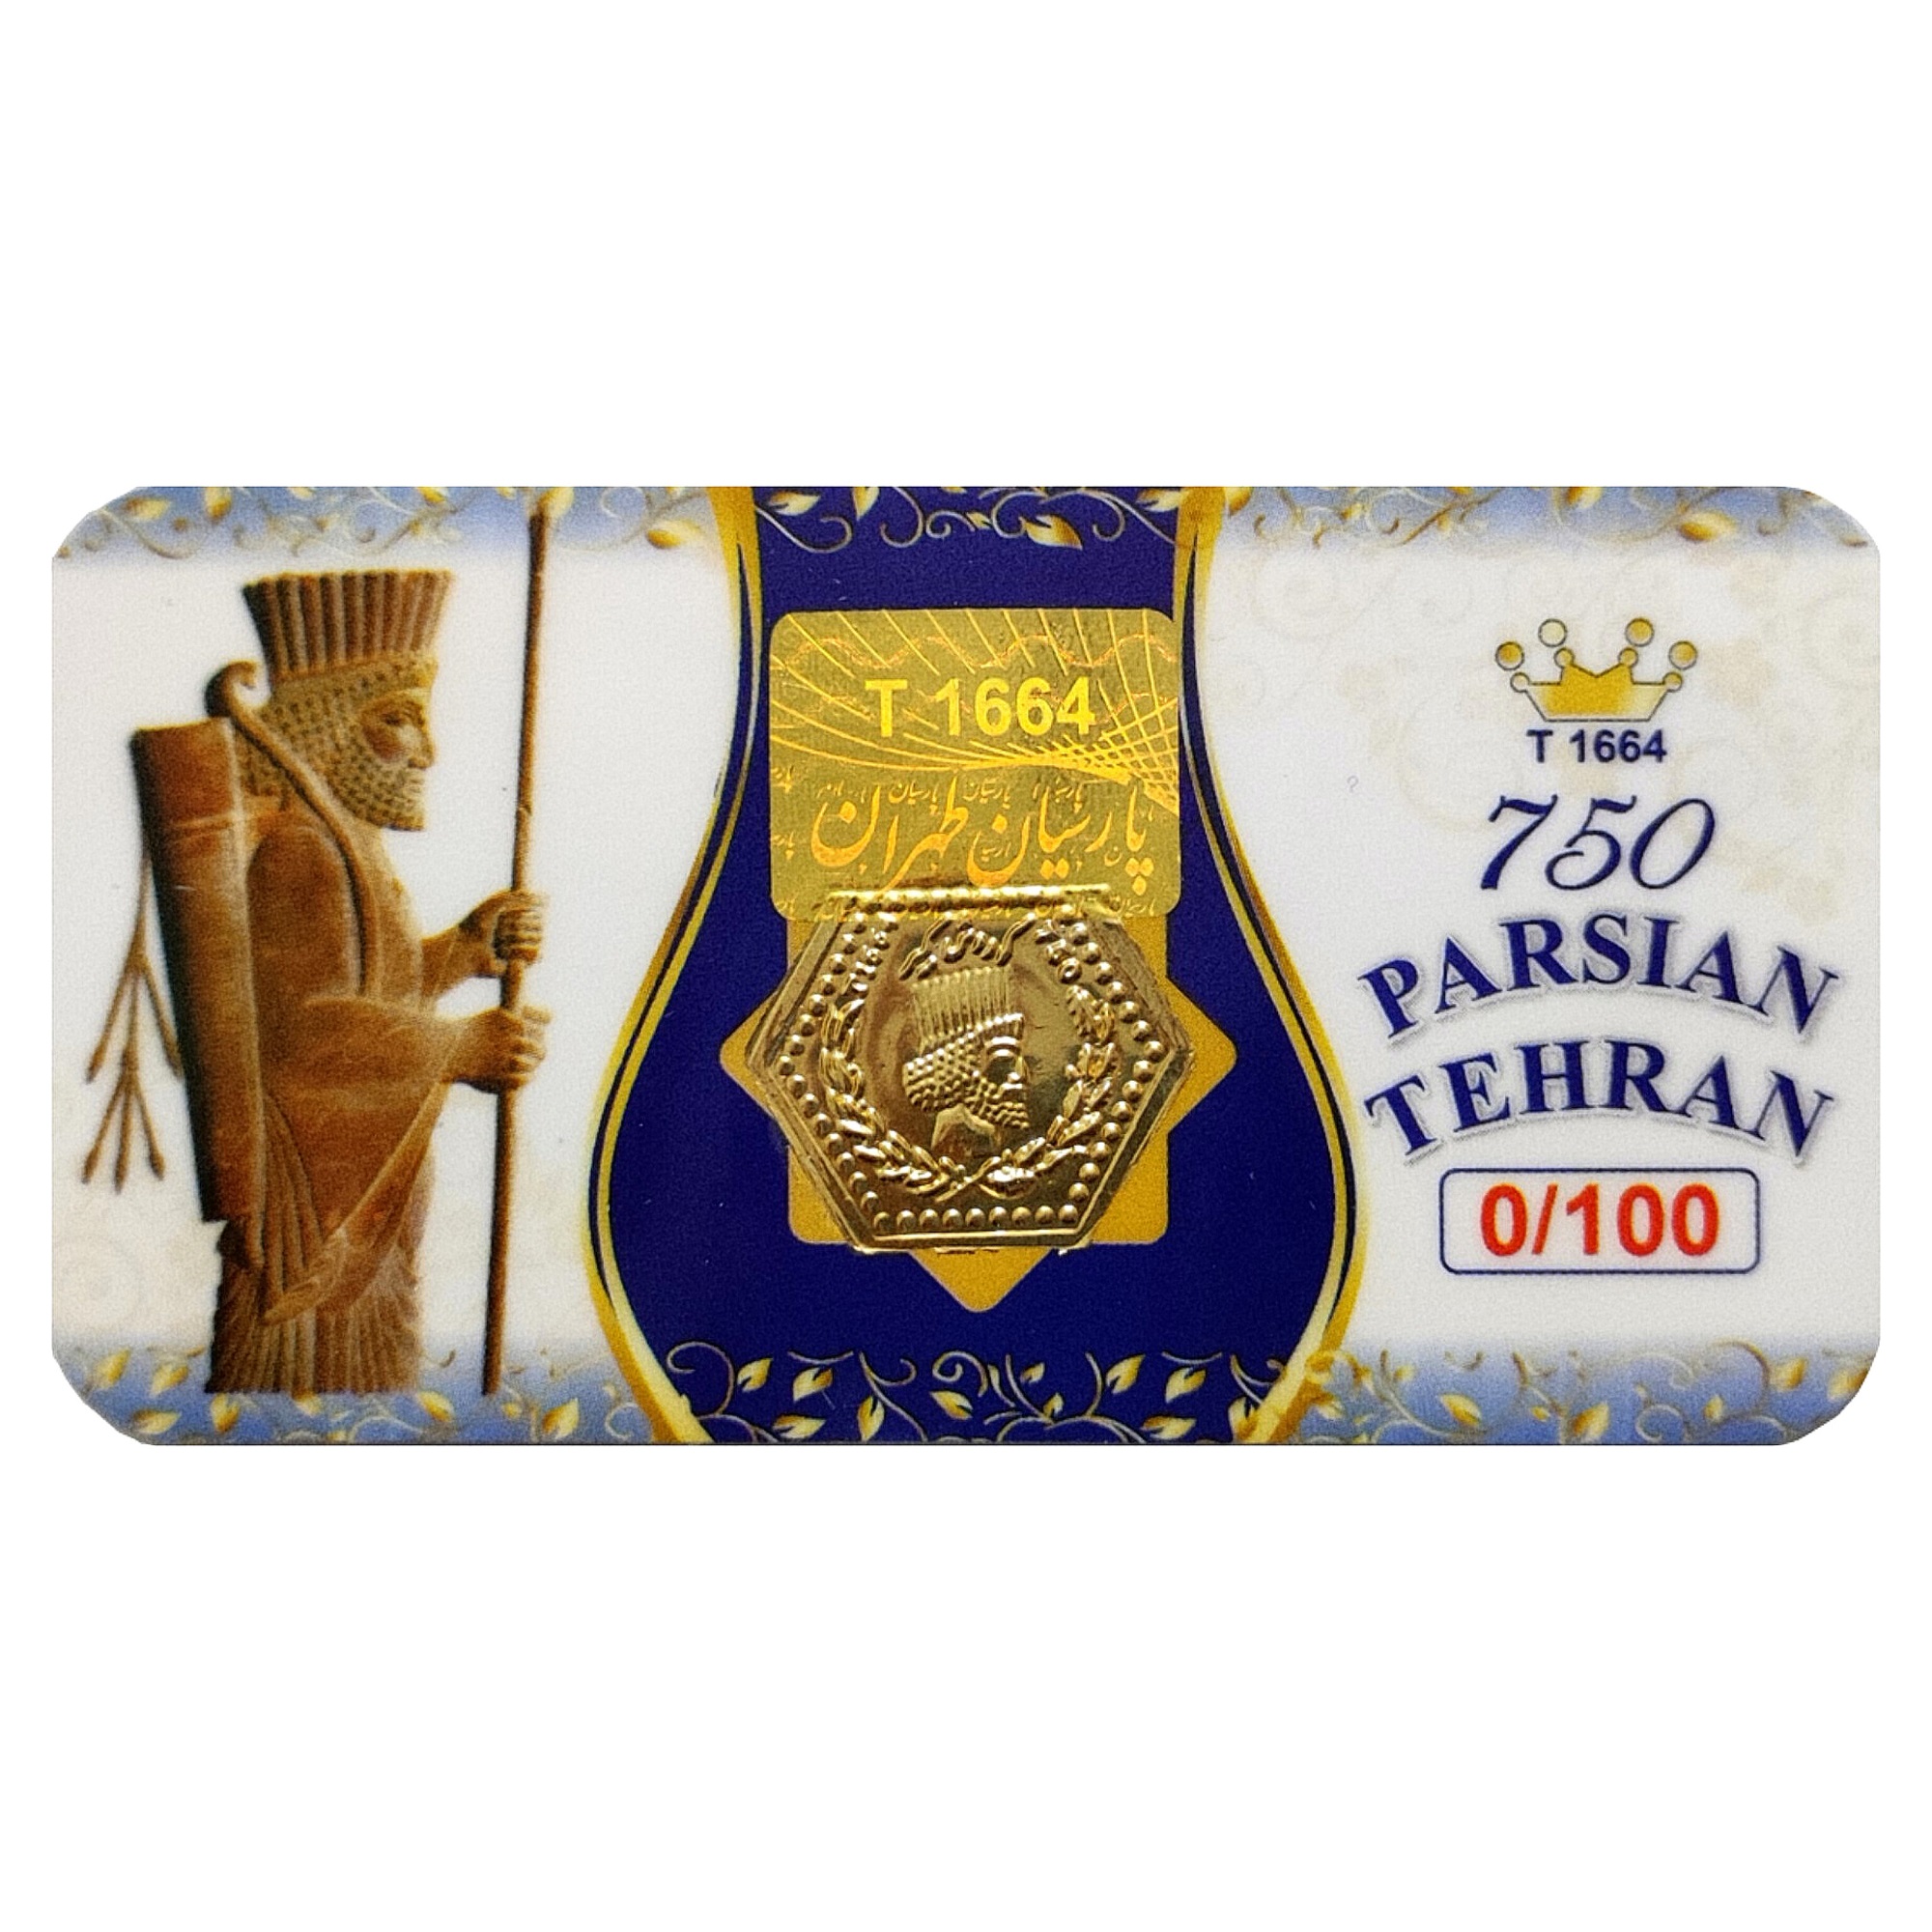 سکه گرمی طلا 18 عیار الن نار مدل پارسیان طهران ELN100